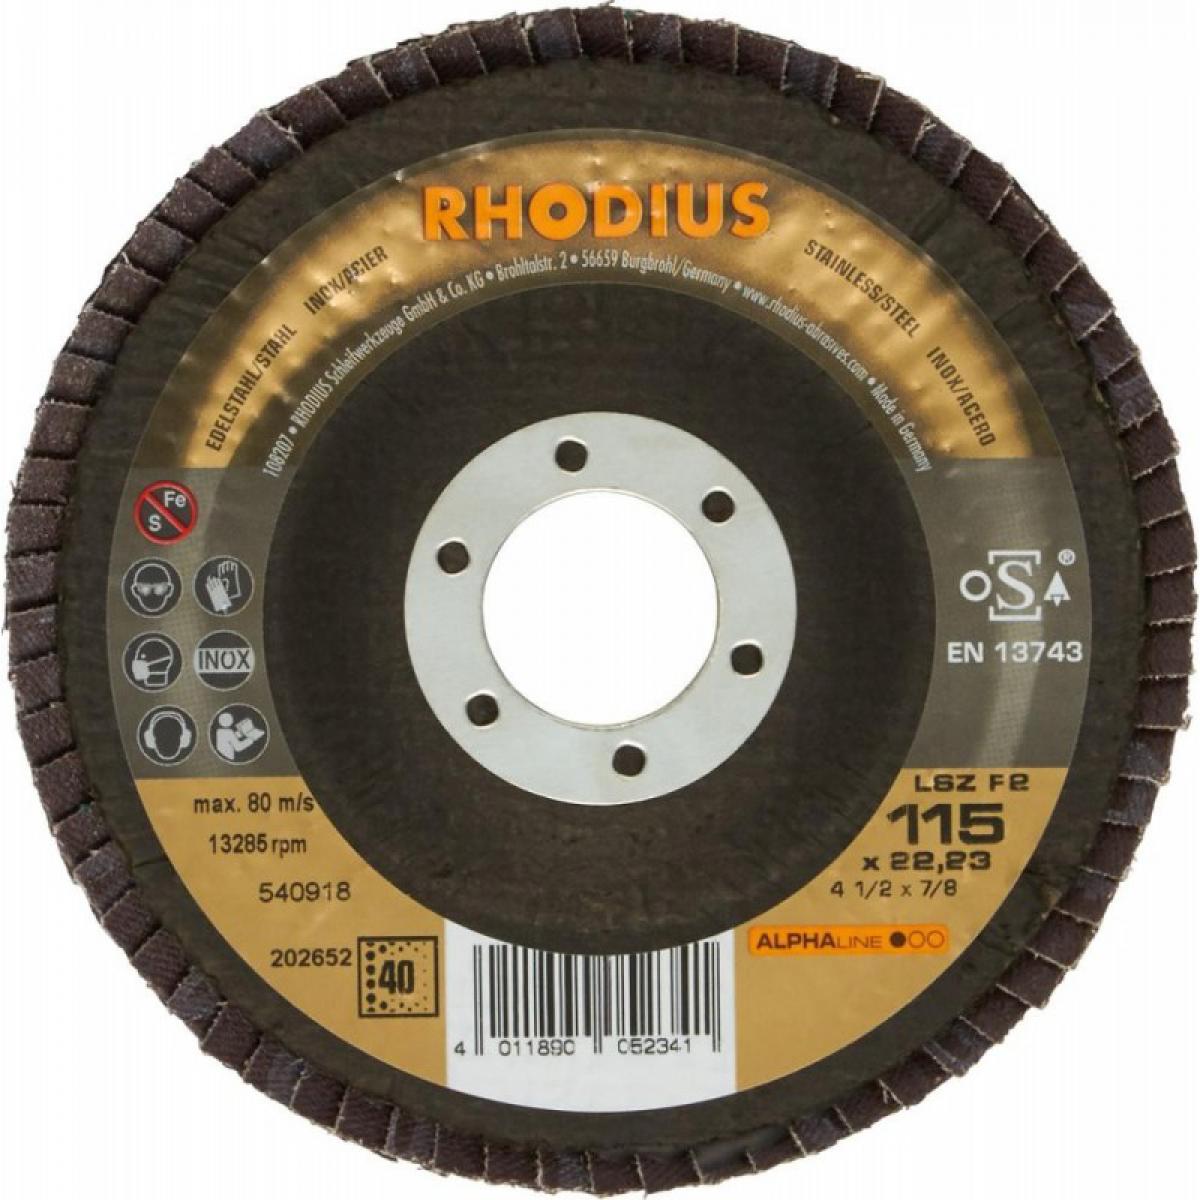 Rhodius - Disque à lamelles LSZ F2115mm K 60 Rhodius - Abrasifs et brosses